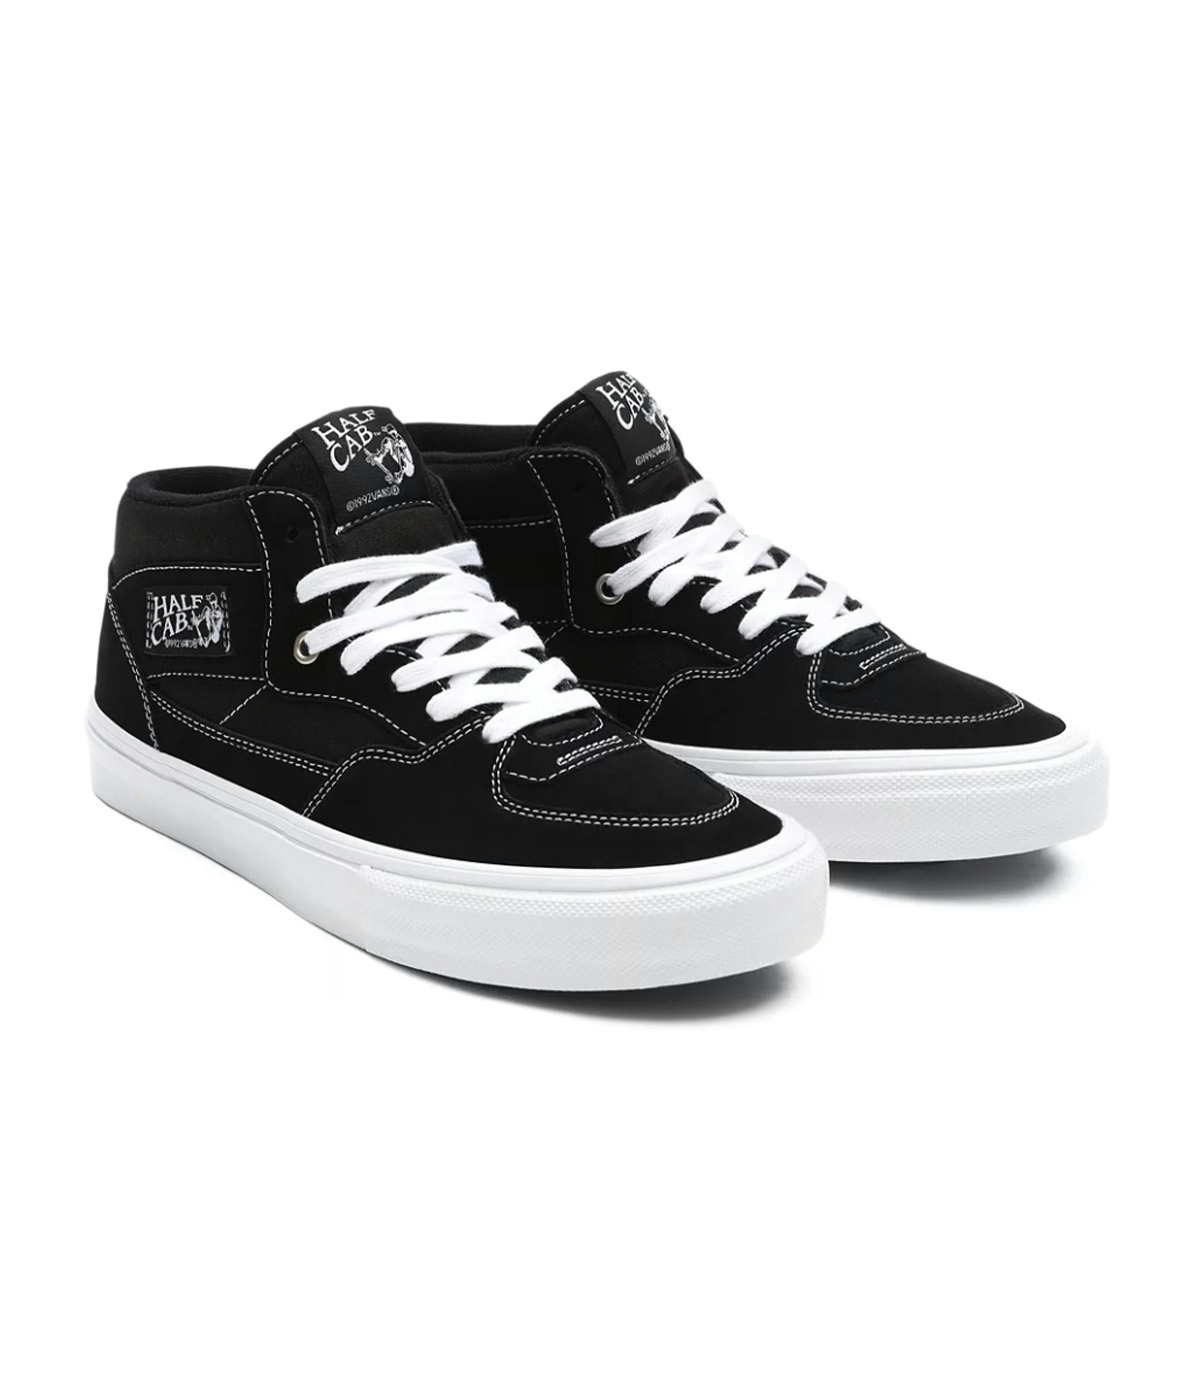 Vans Skate Half Cab Shoes - Skor Black/White 1